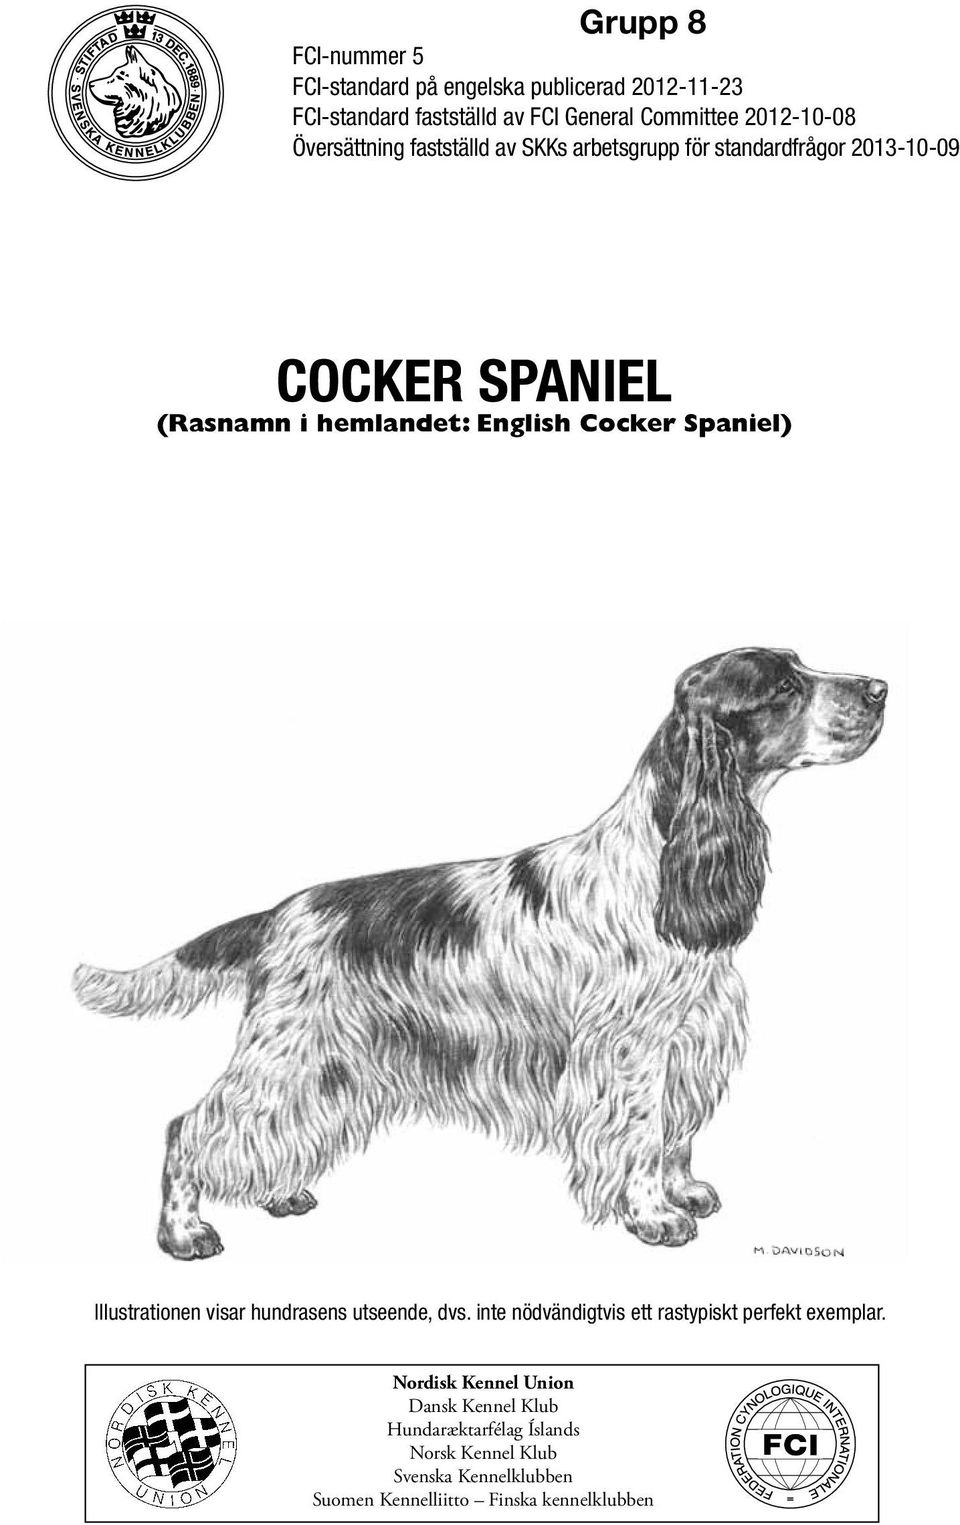 English Cocker Spaniel) Illustrationen visar hundrasens utseende, dvs. inte nödvändigtvis ett rastypiskt perfekt exemplar.